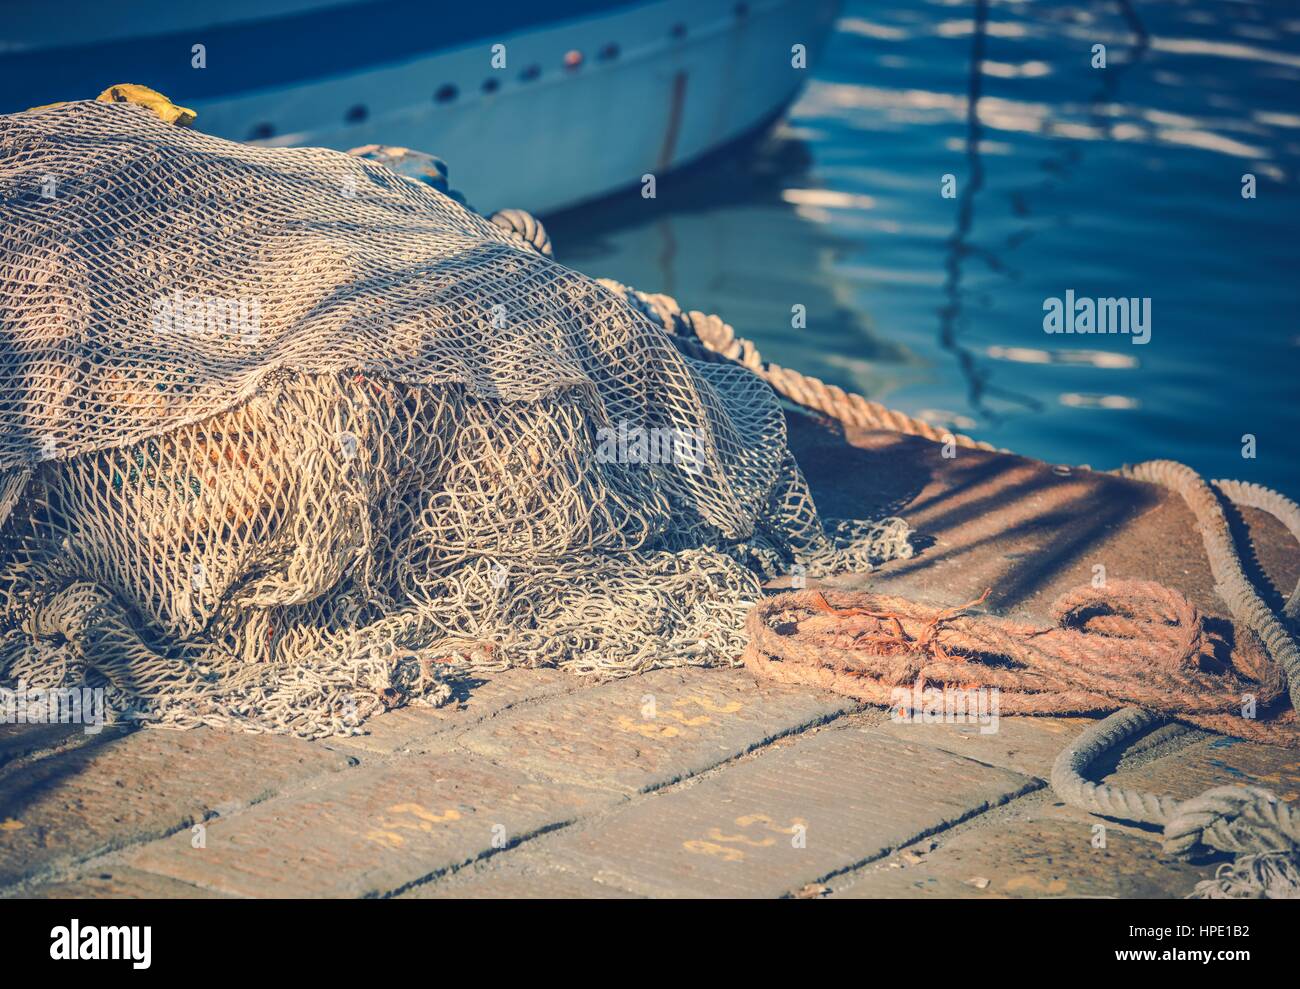 Le reti da pesca nella Marina Closeup Photo. Industria della pesca. Foto Stock